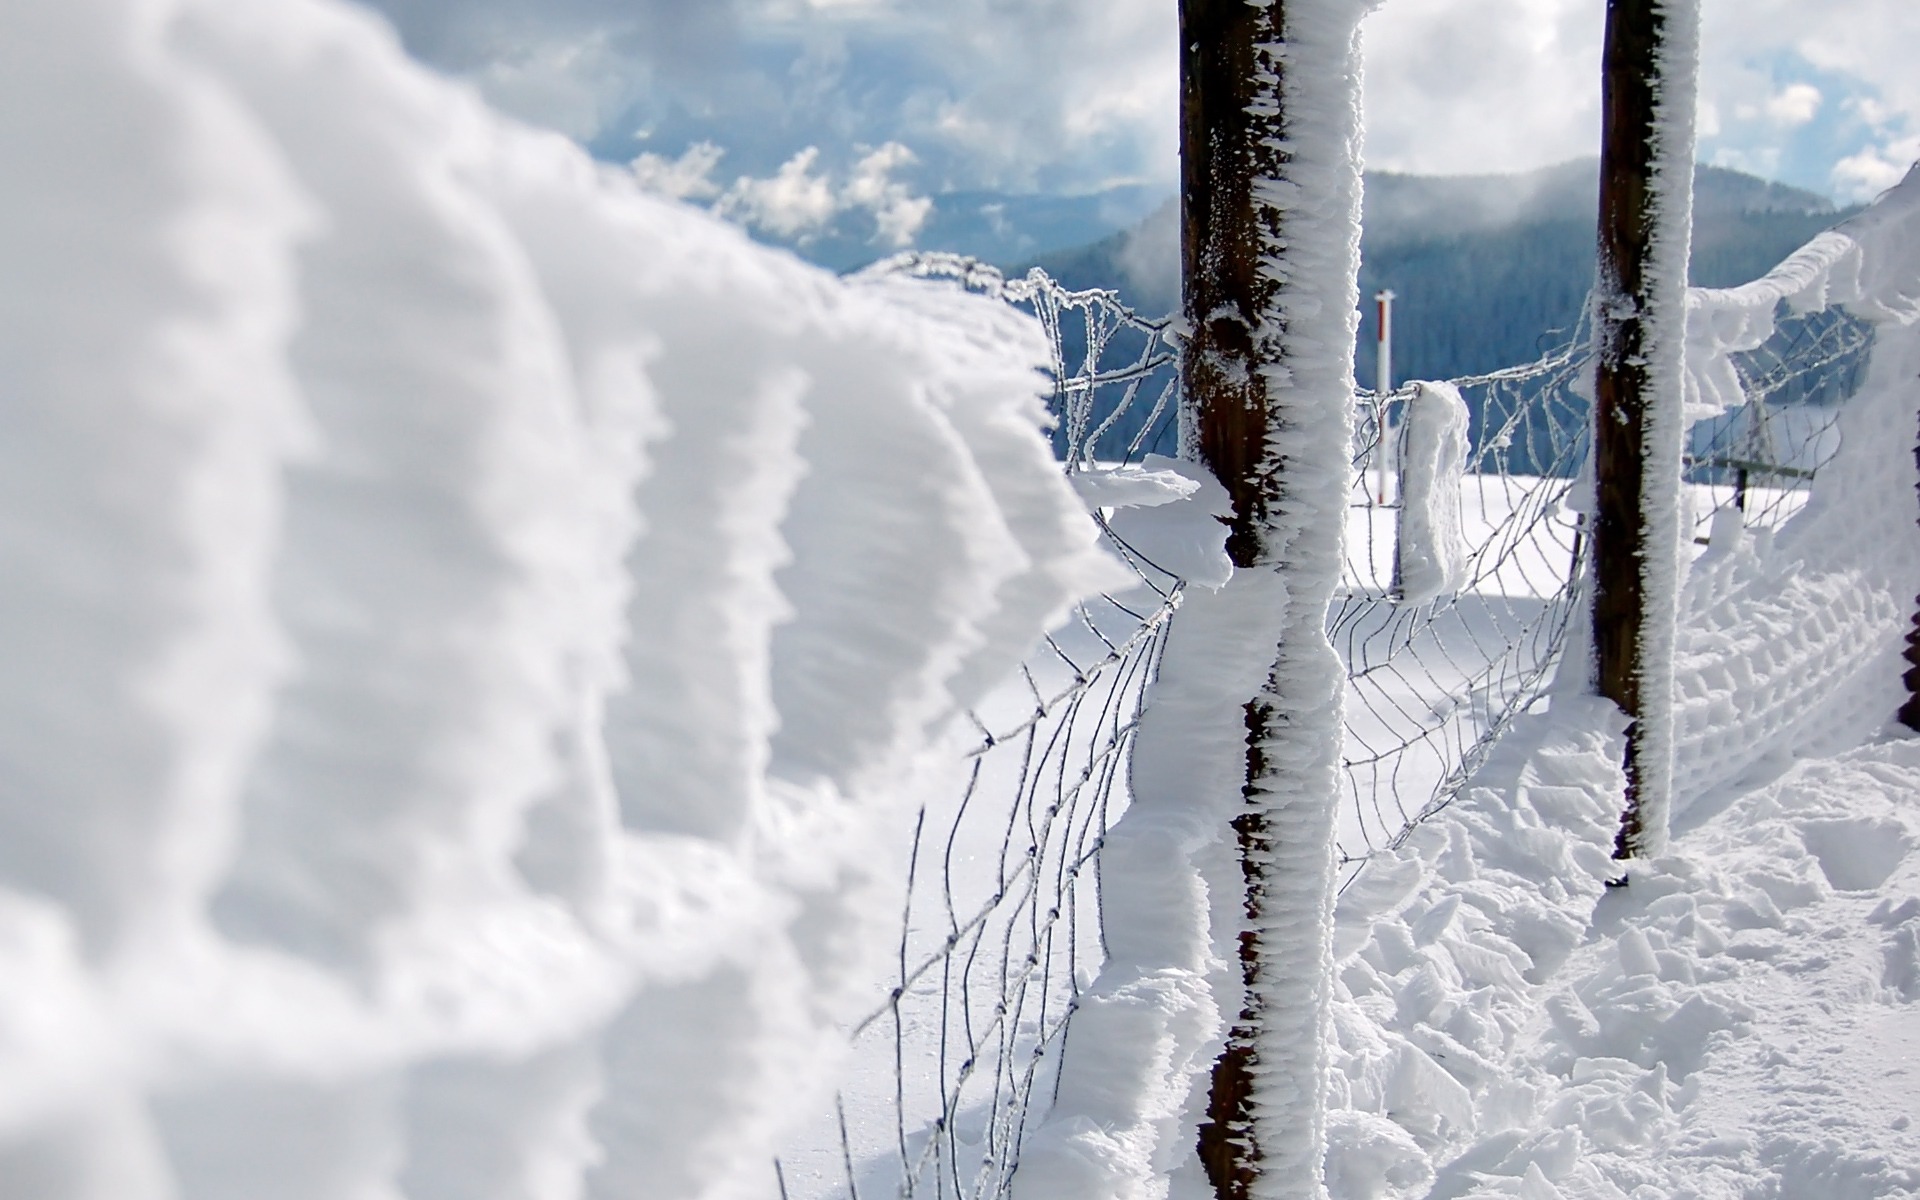 snow, fences, chain link fence - desktop wallpaper